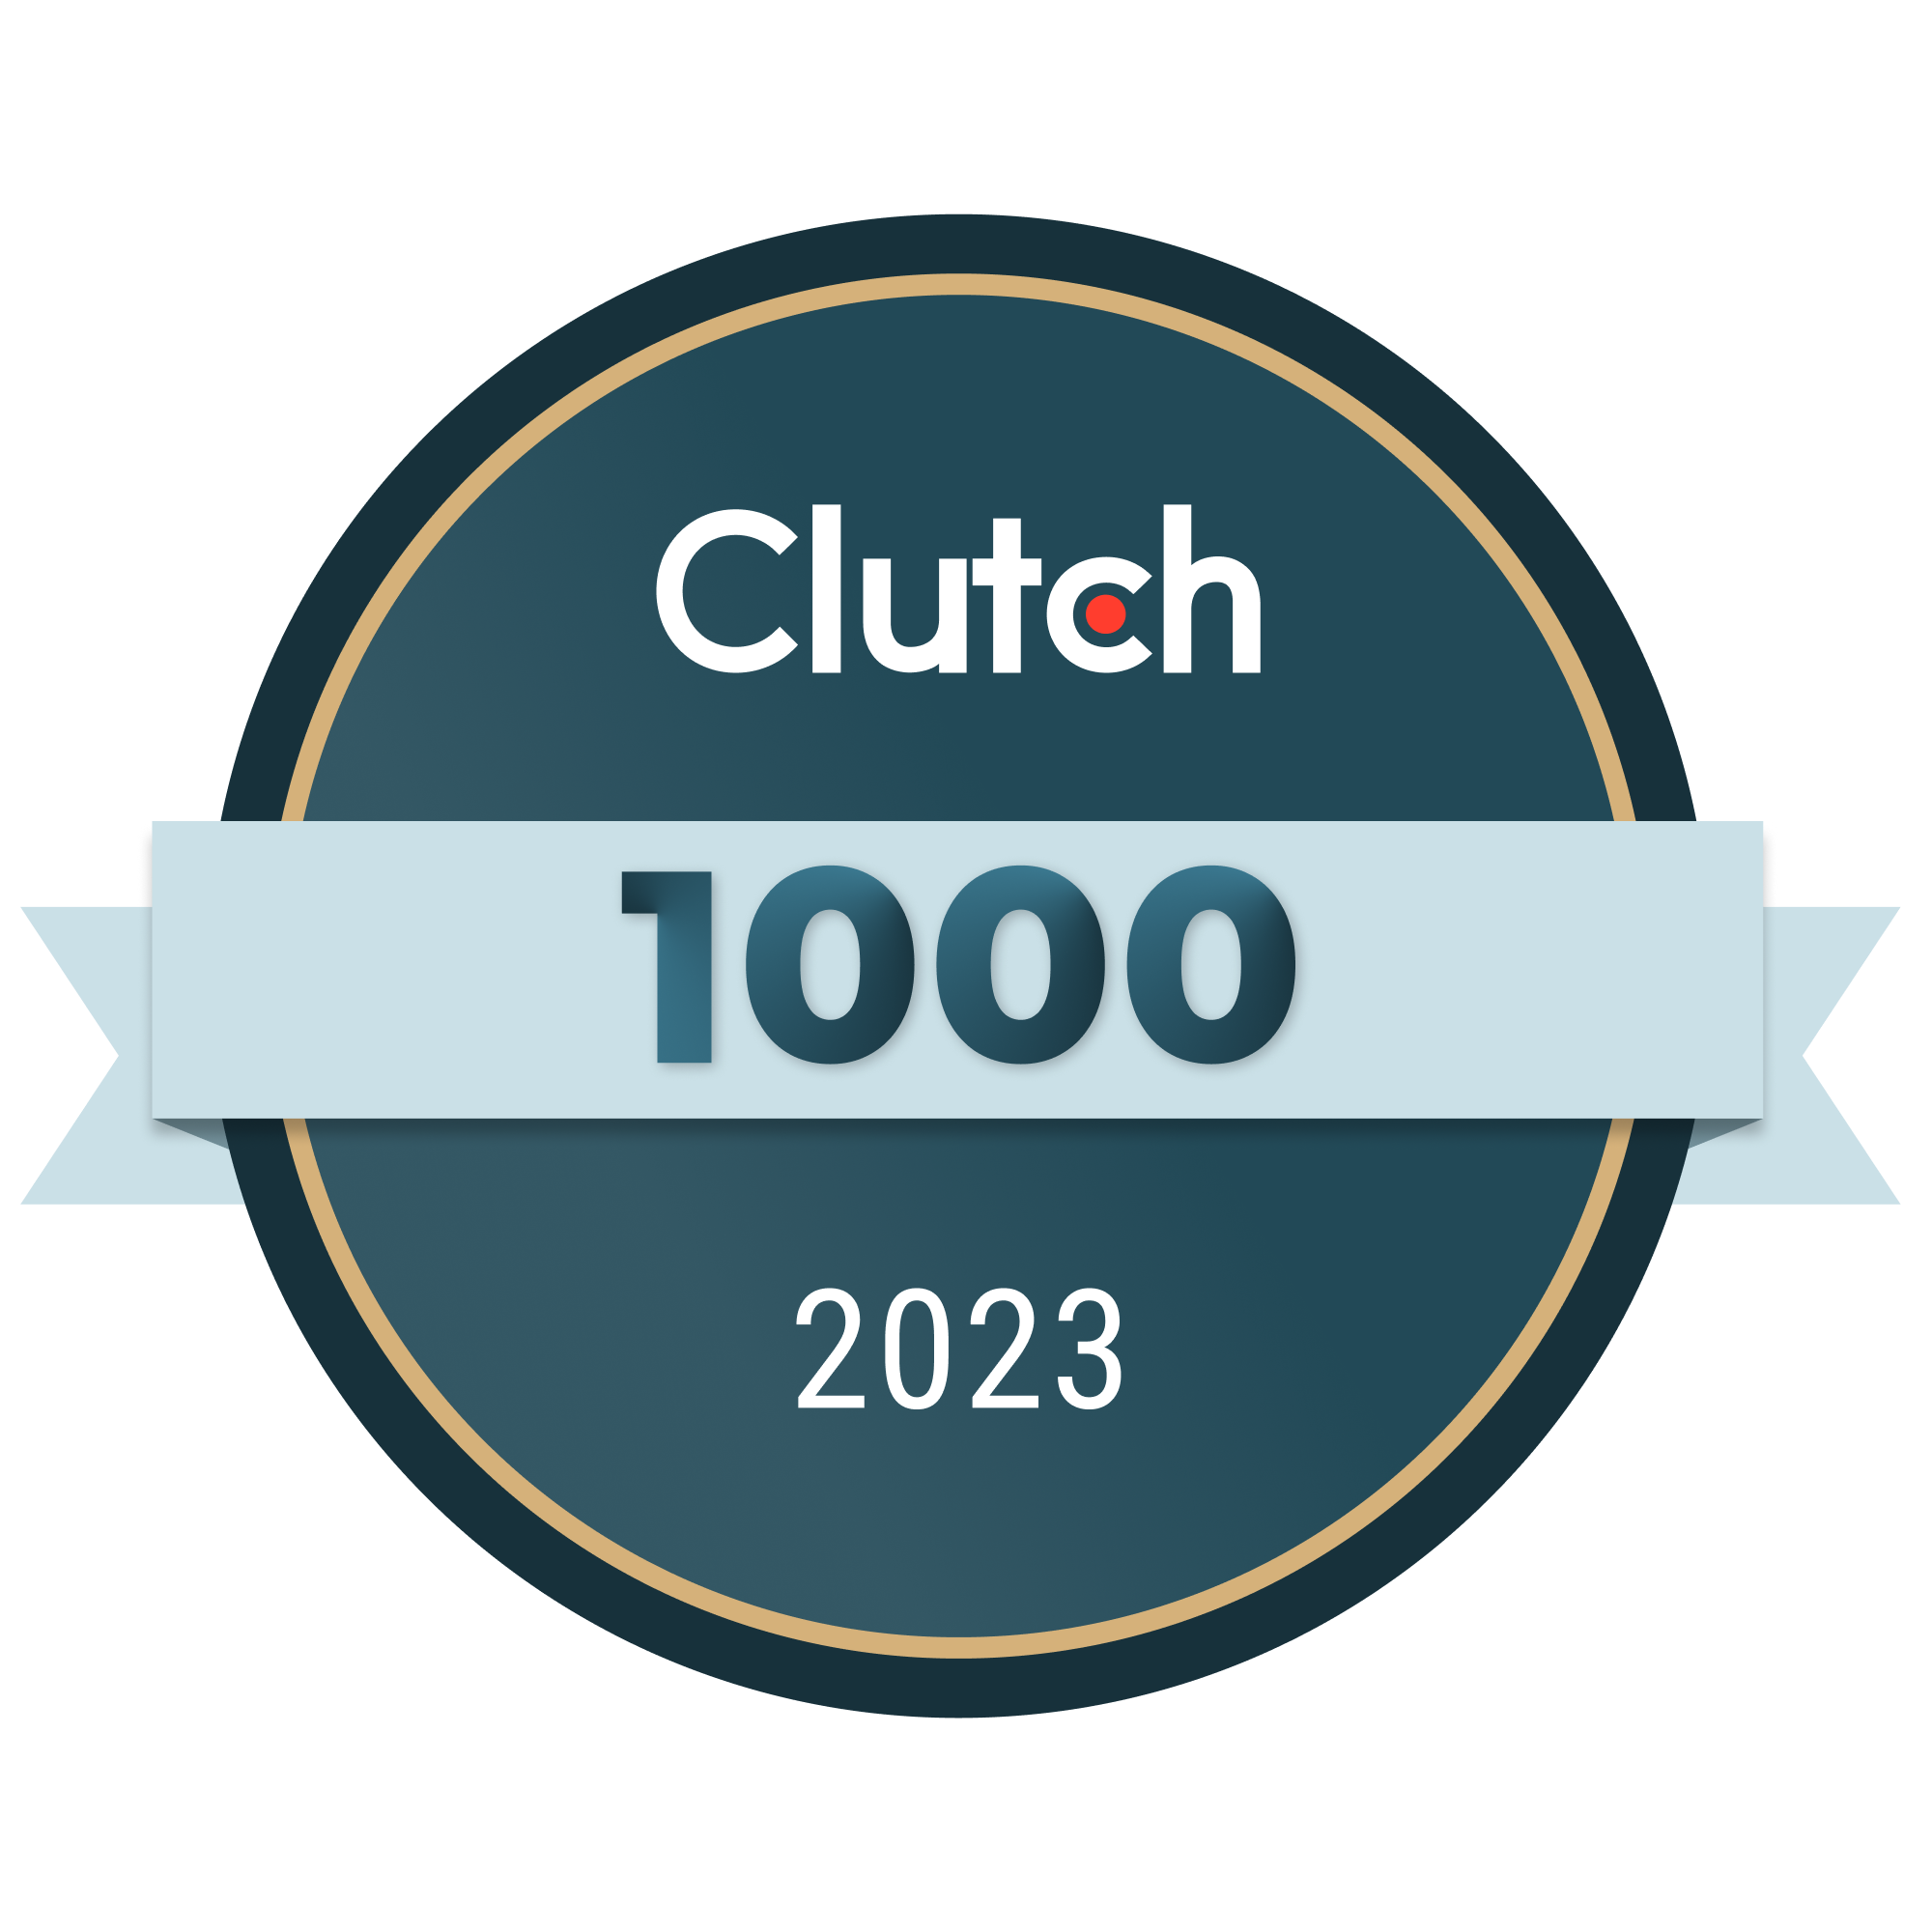 Clutch 1000 